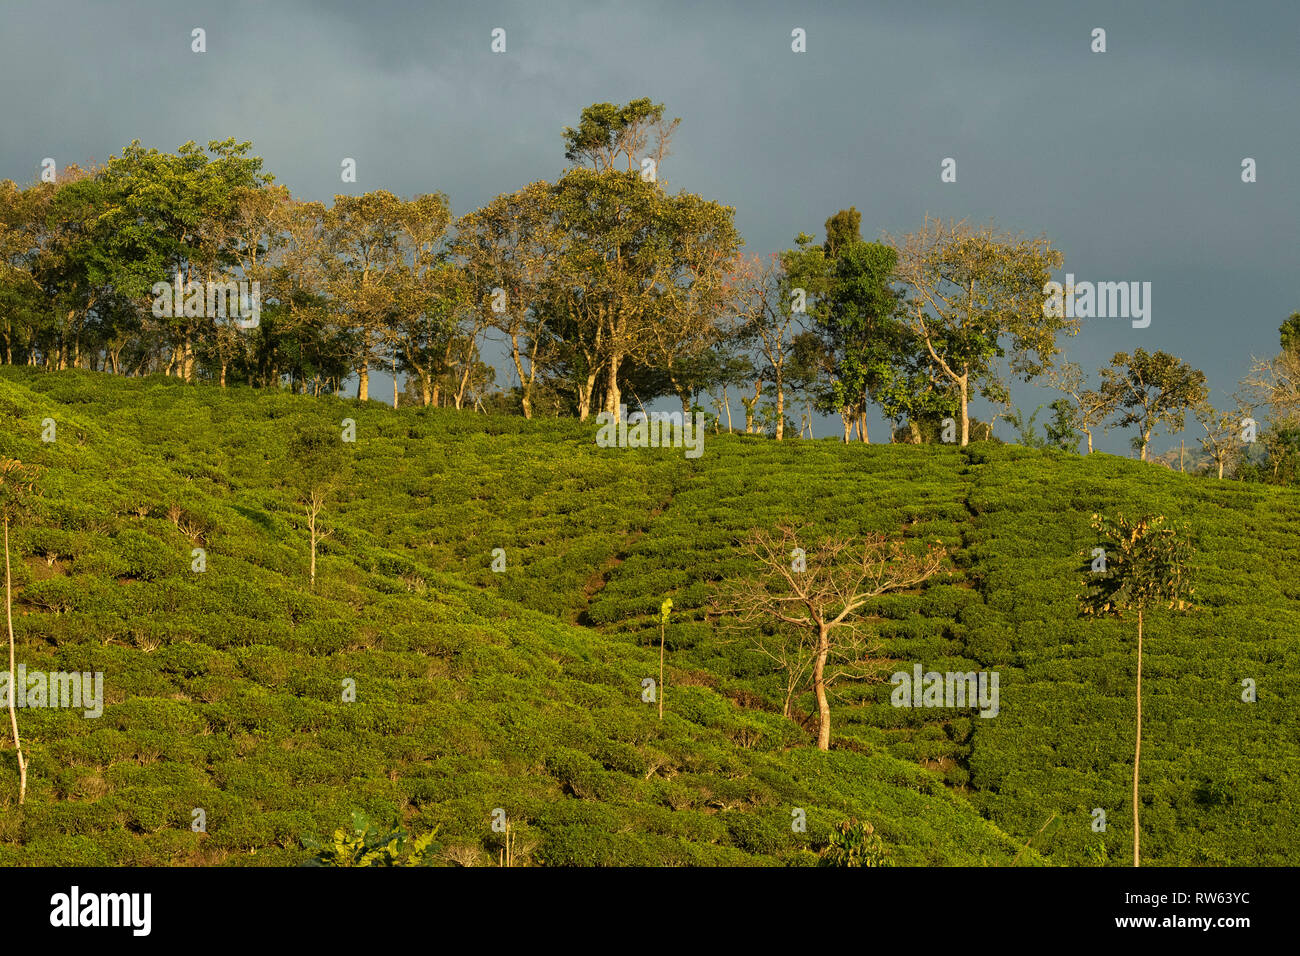 Tea plantations at the edge of Bwindi Impenetrable National Park, Uganda Stock Photo